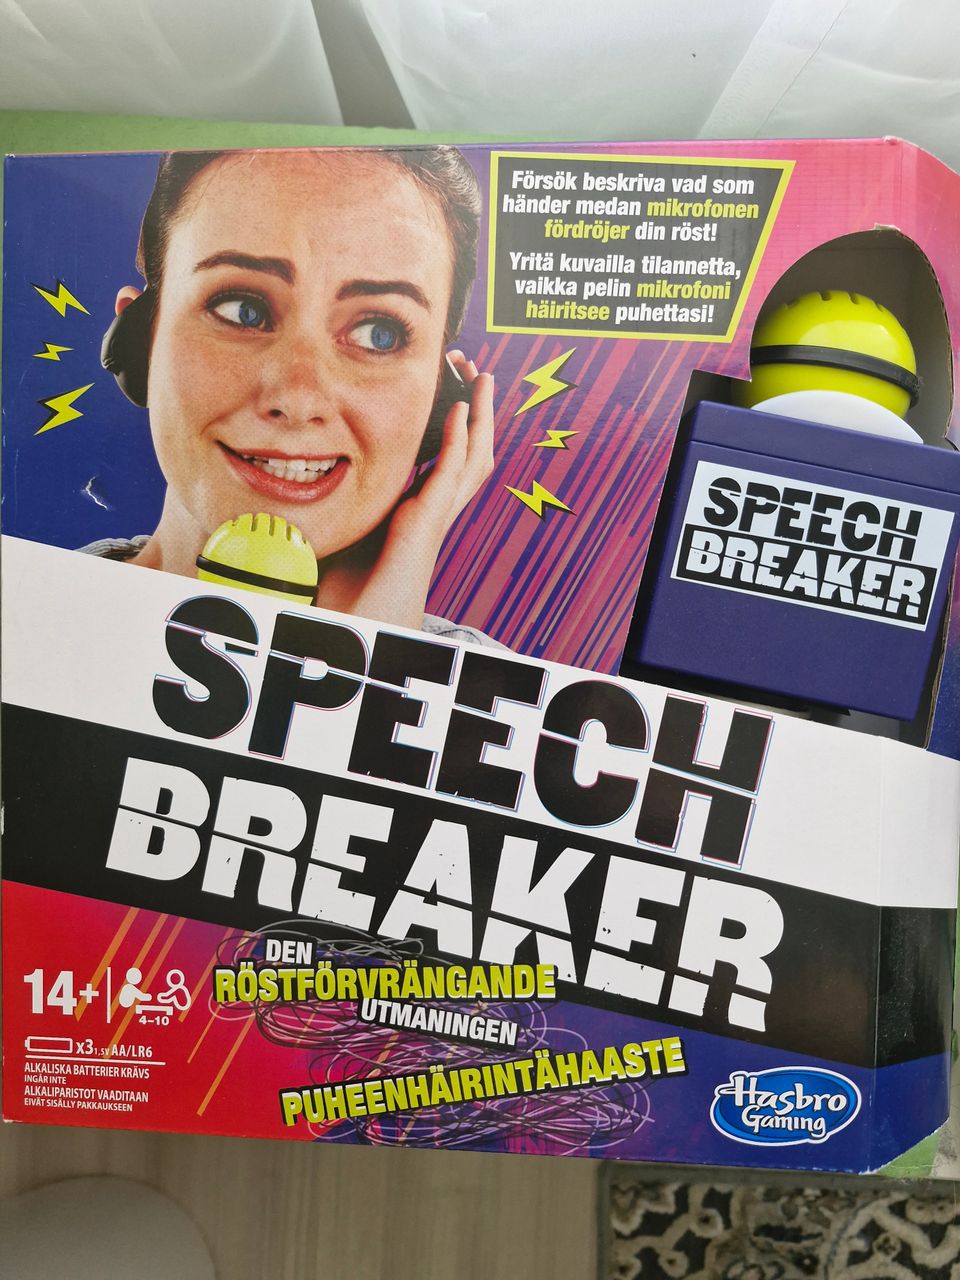 Speech breaker uusi lautapeli